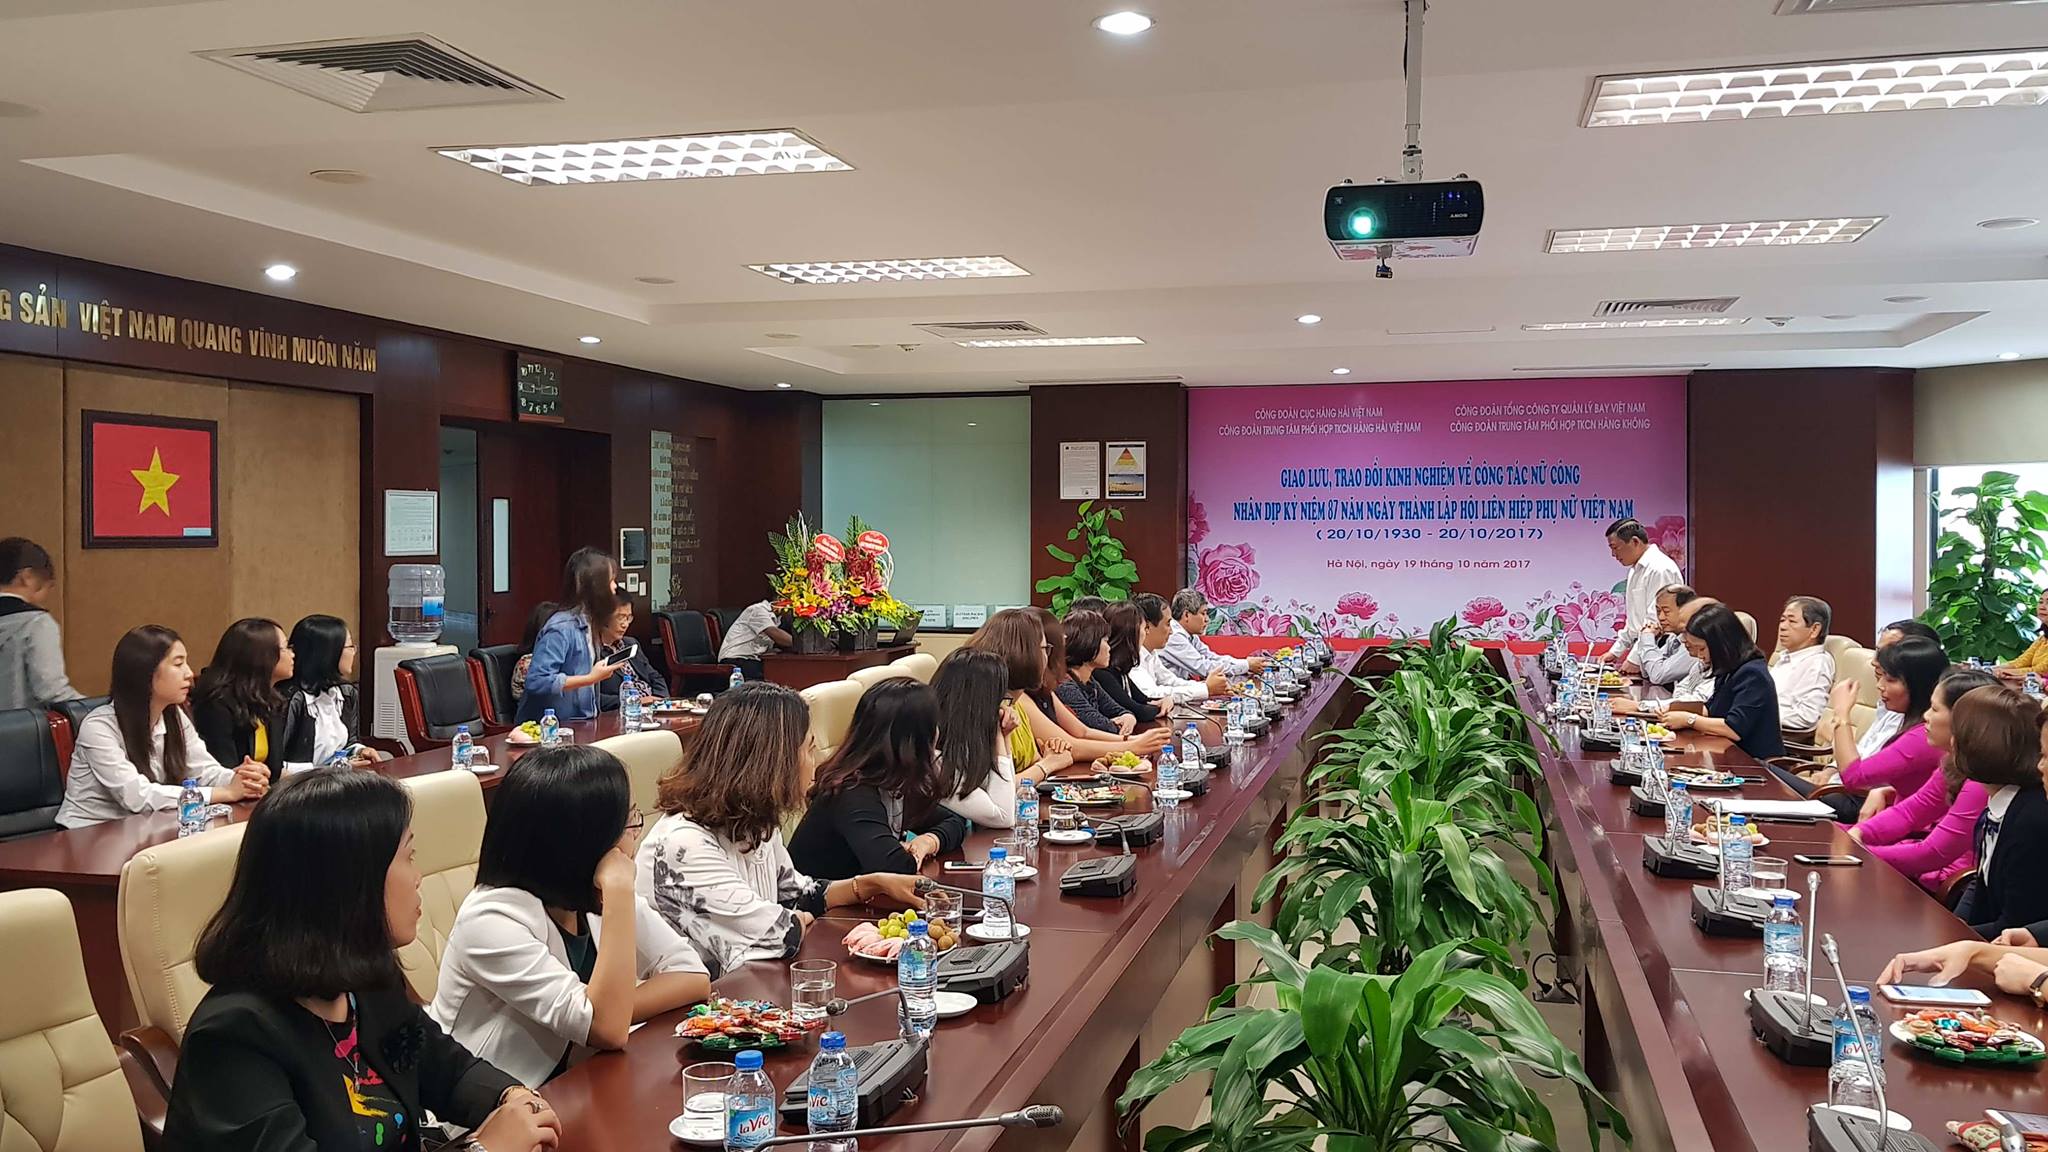 Trung tâm Phối hợp tìm kiếm cứu nạn hàng không tổ chức giao lưu, trao đổi kinh nghiệm nhân dịp kỷ niệm 87 năm Ngày thành lập Hội Liên hiệp phụ nữ Việt Nam